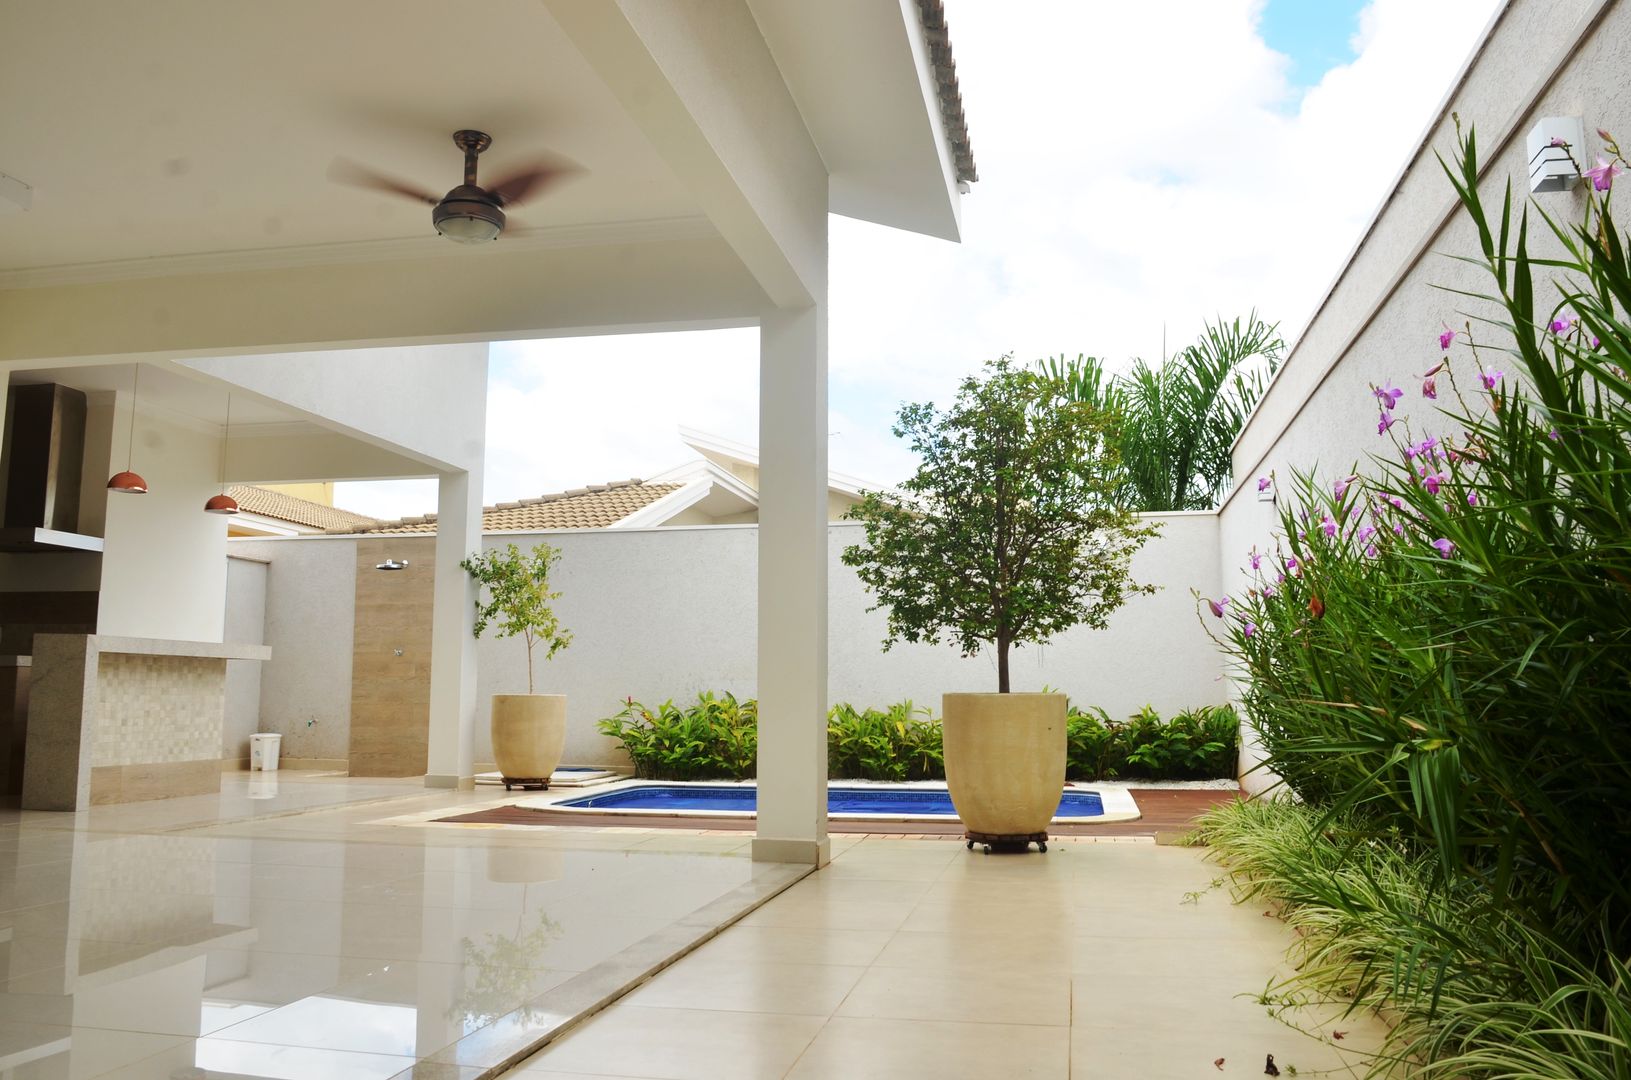 Varanda Paula Ferro Arquitetura Casas clássicas piscina ao ar livre,piscina de jardim,piscina,varanda